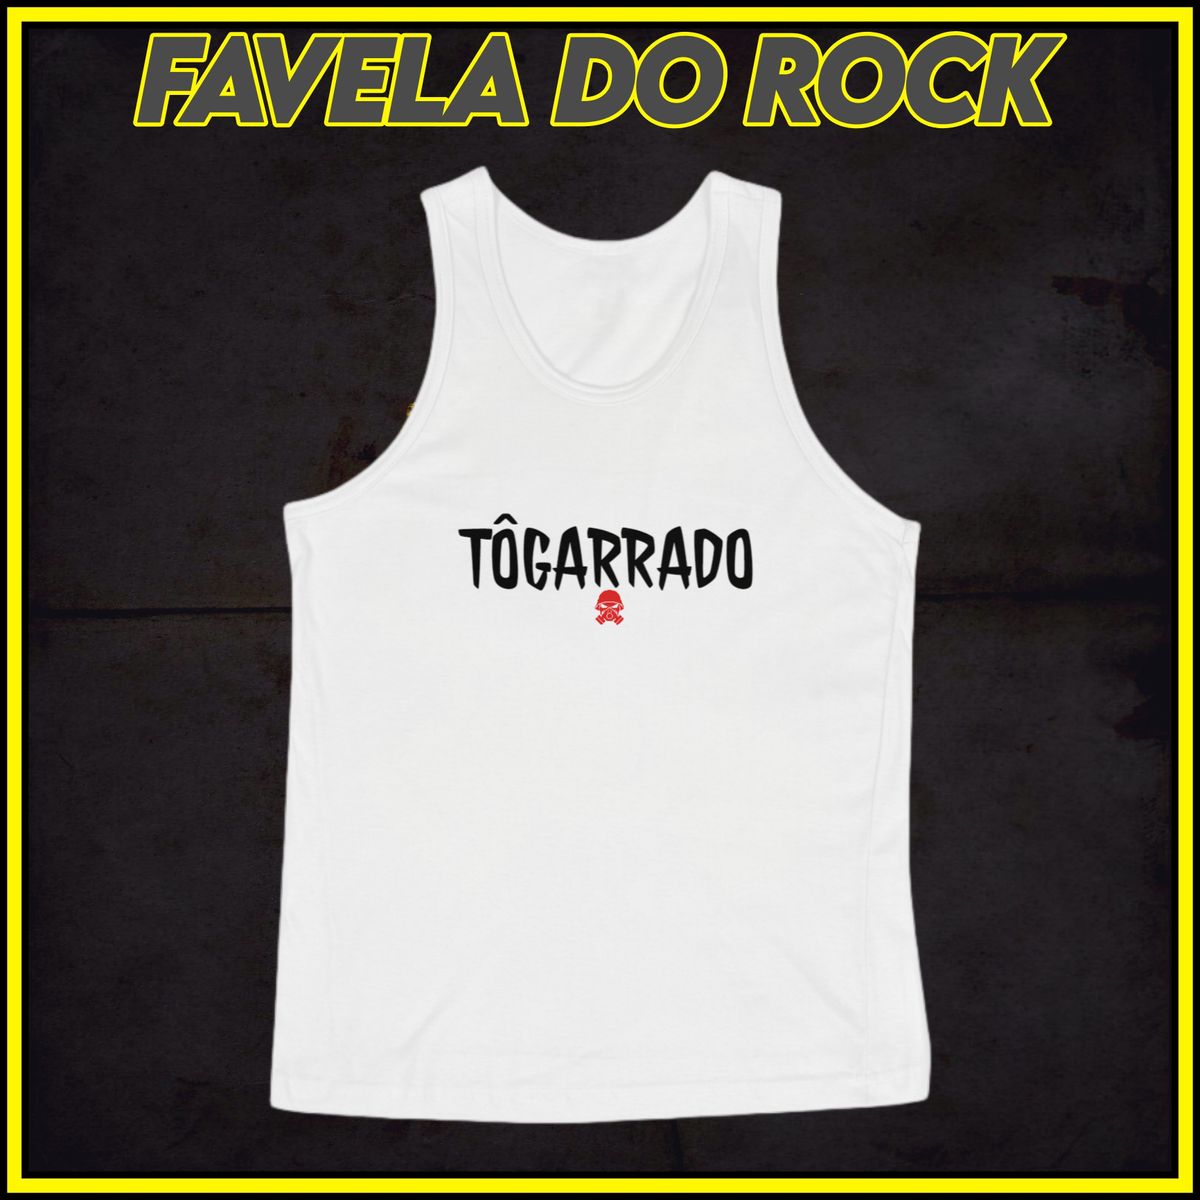 Nome do produto: REGATA FAVELA DO ROCK MINEIRO - TÔGARRADO